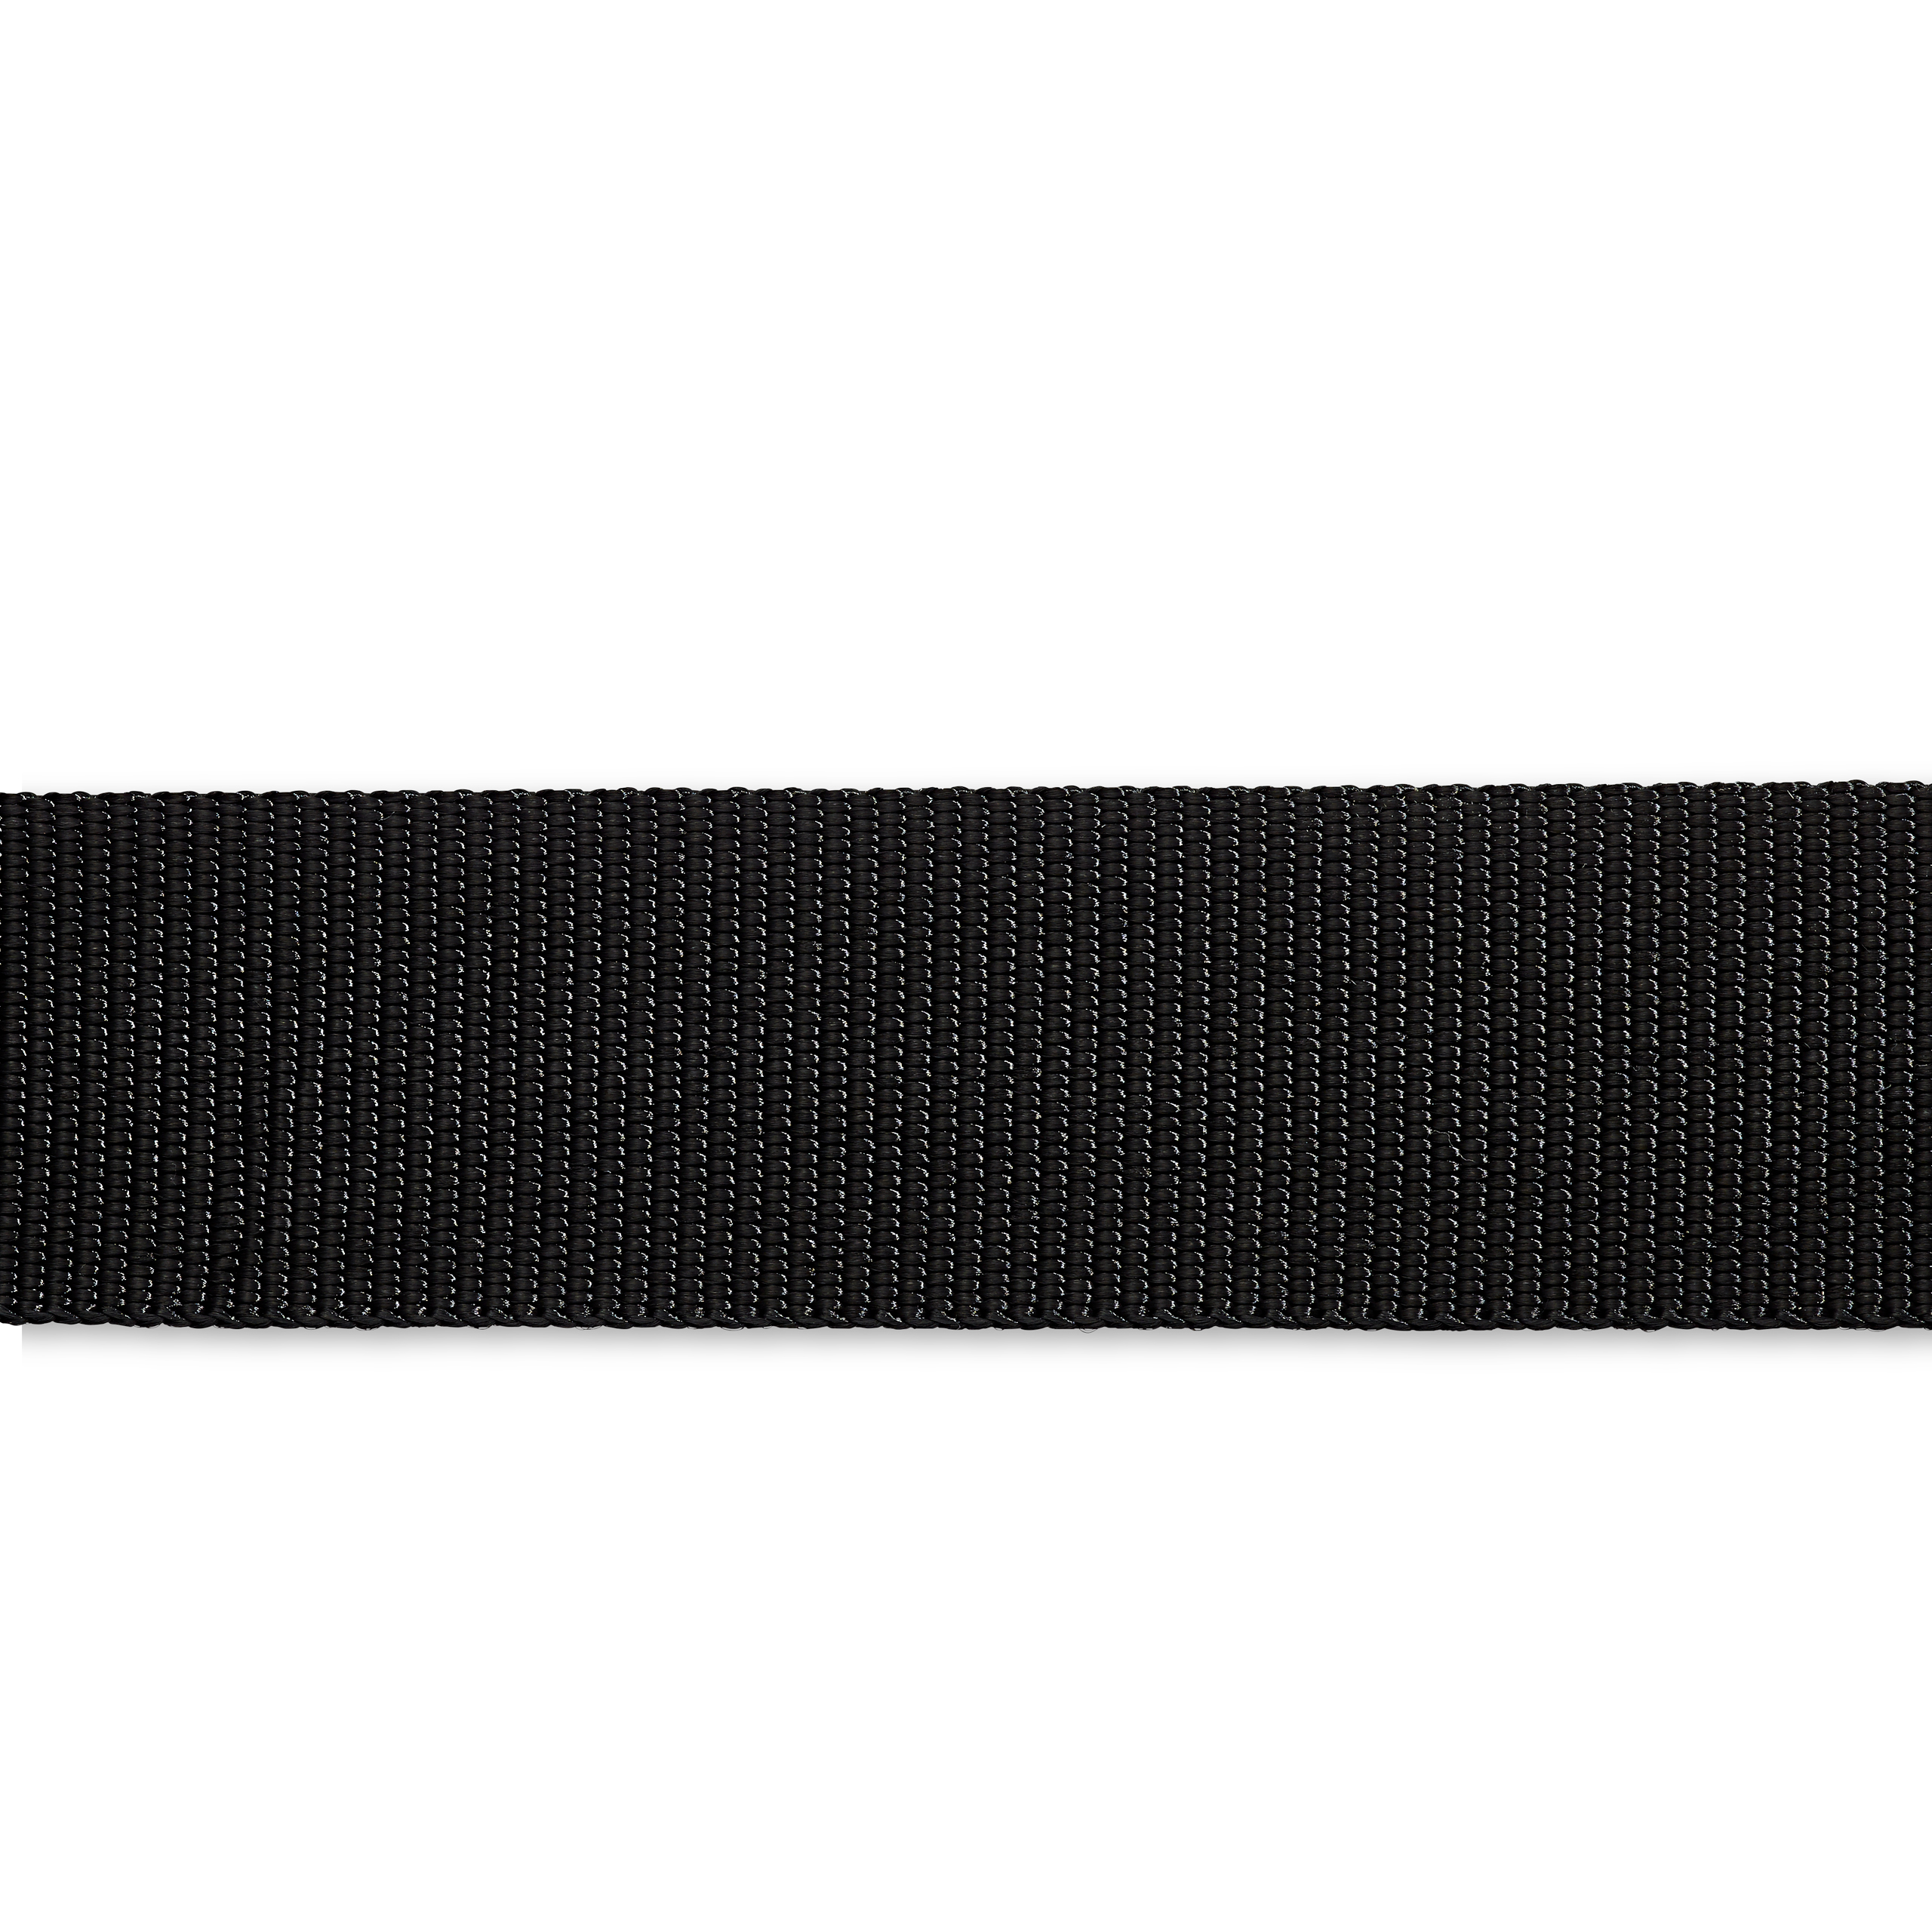 Gurtband für Rucksäcke 40 mm schwarz, Meterware